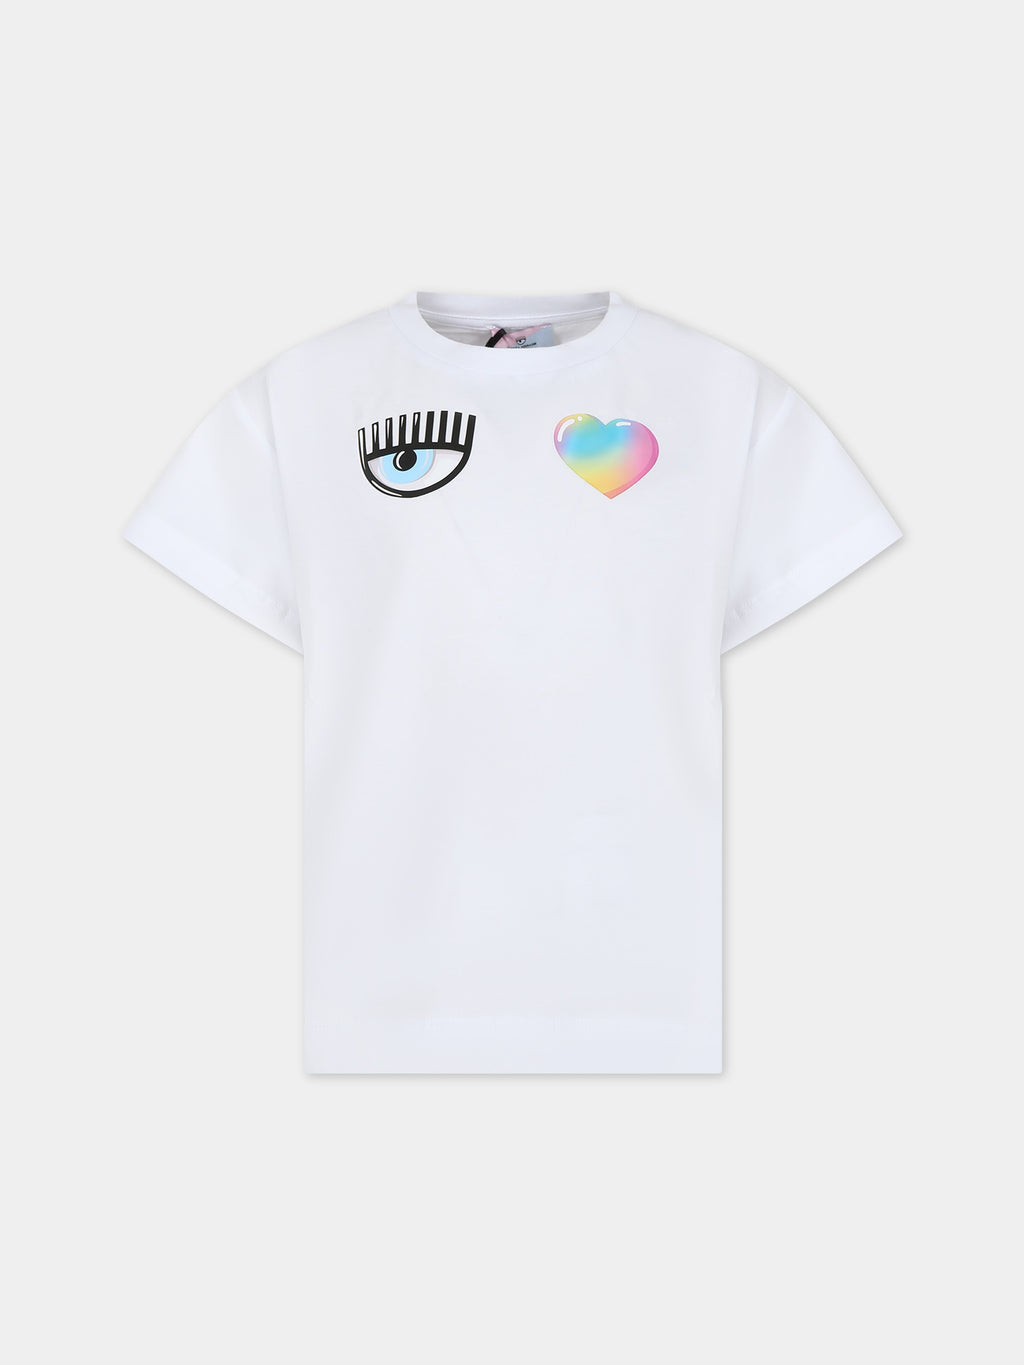 T-shirt bianca per bambina con eye flirting e cuore